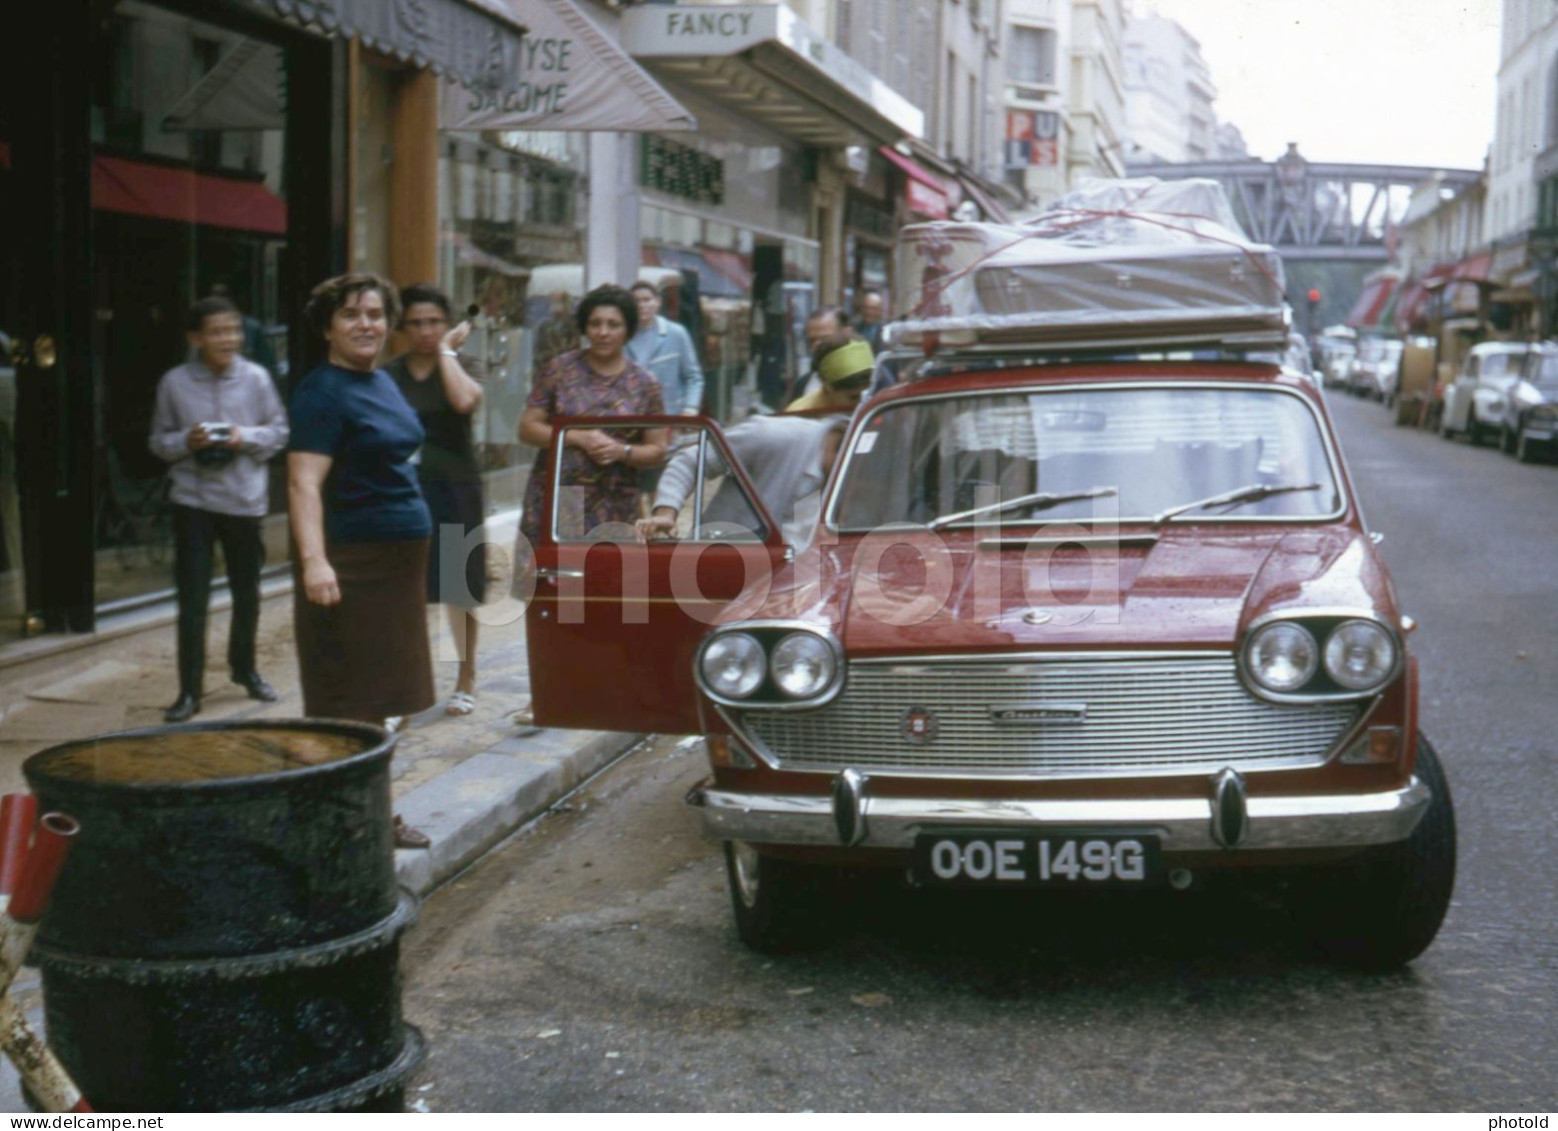 1969 UK PLATE AUSTIN 3 LITRE CAR RUE DU COMMERCE PARIS FRANCE 35mm AMATEUR DIAPOSITIVE SLIDE Not PHOTO No FOTO NB4129 - Dias